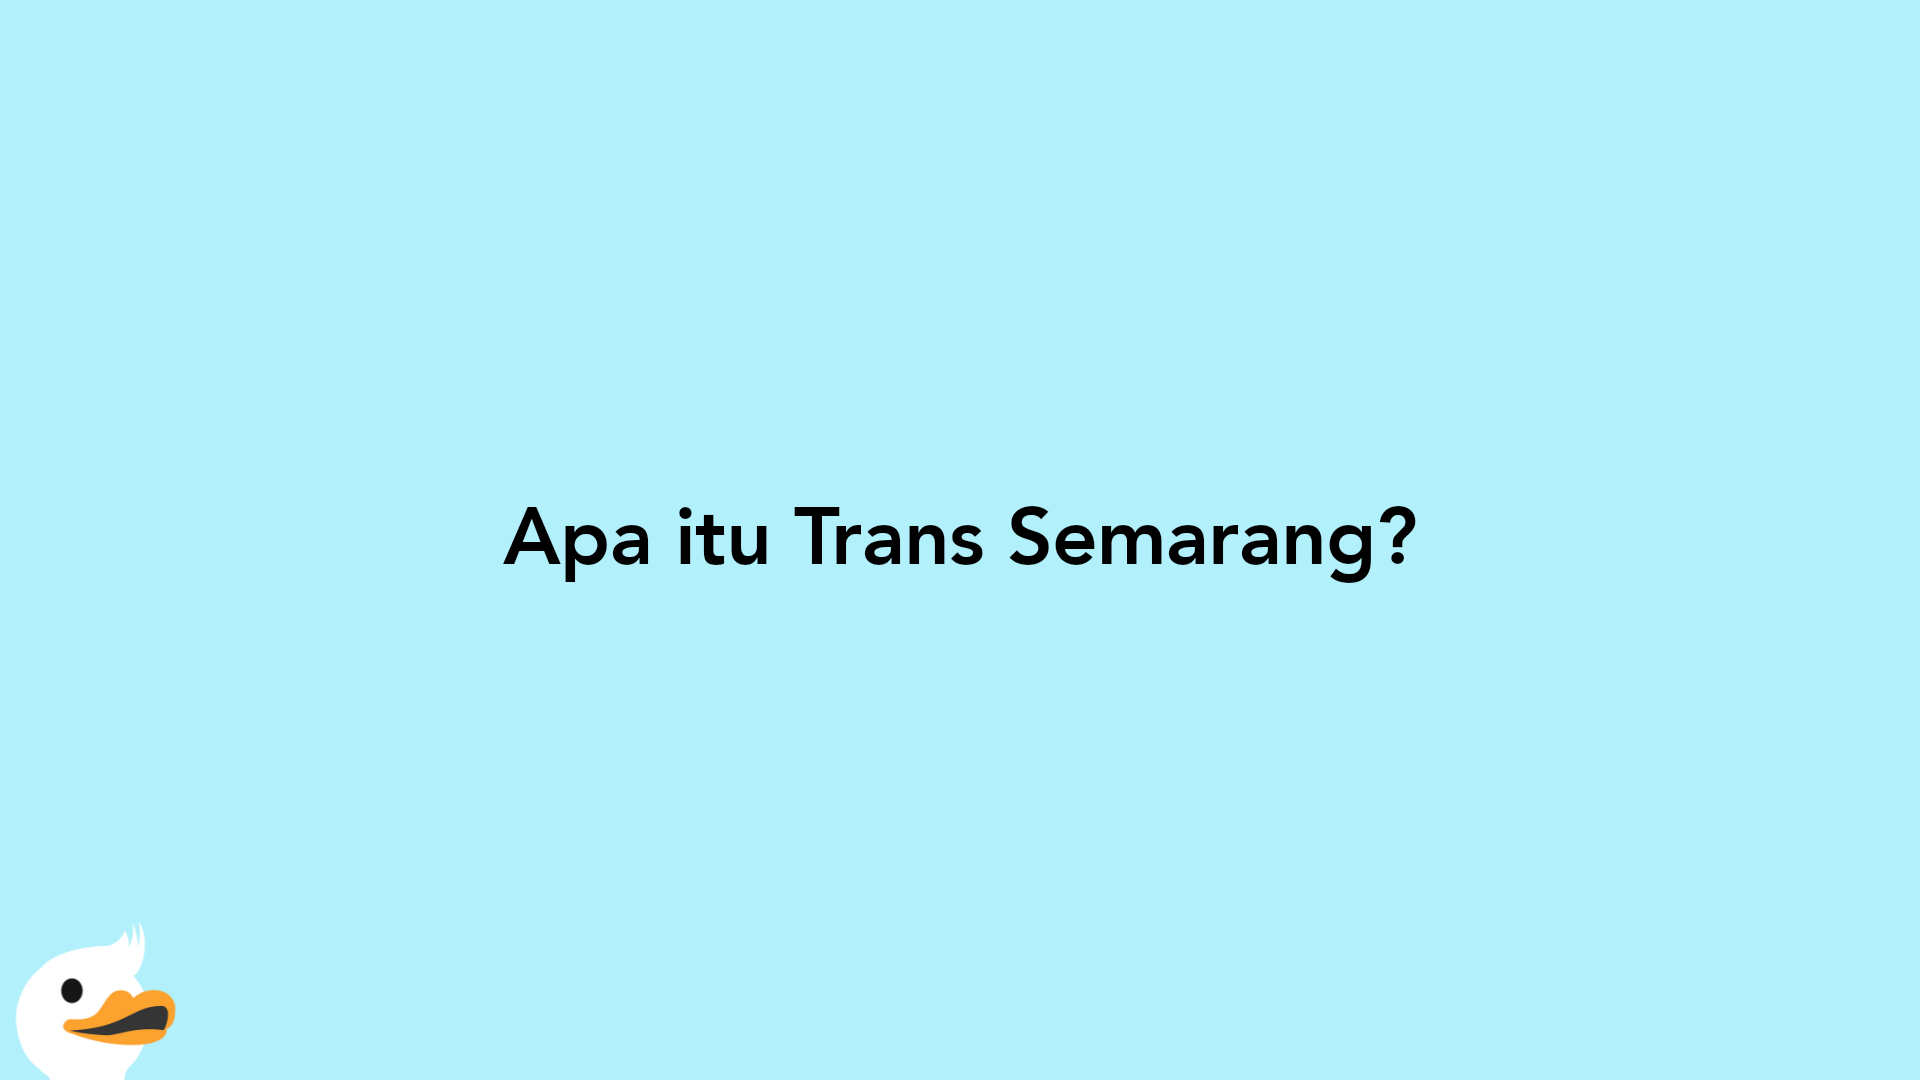 Apa itu Trans Semarang?